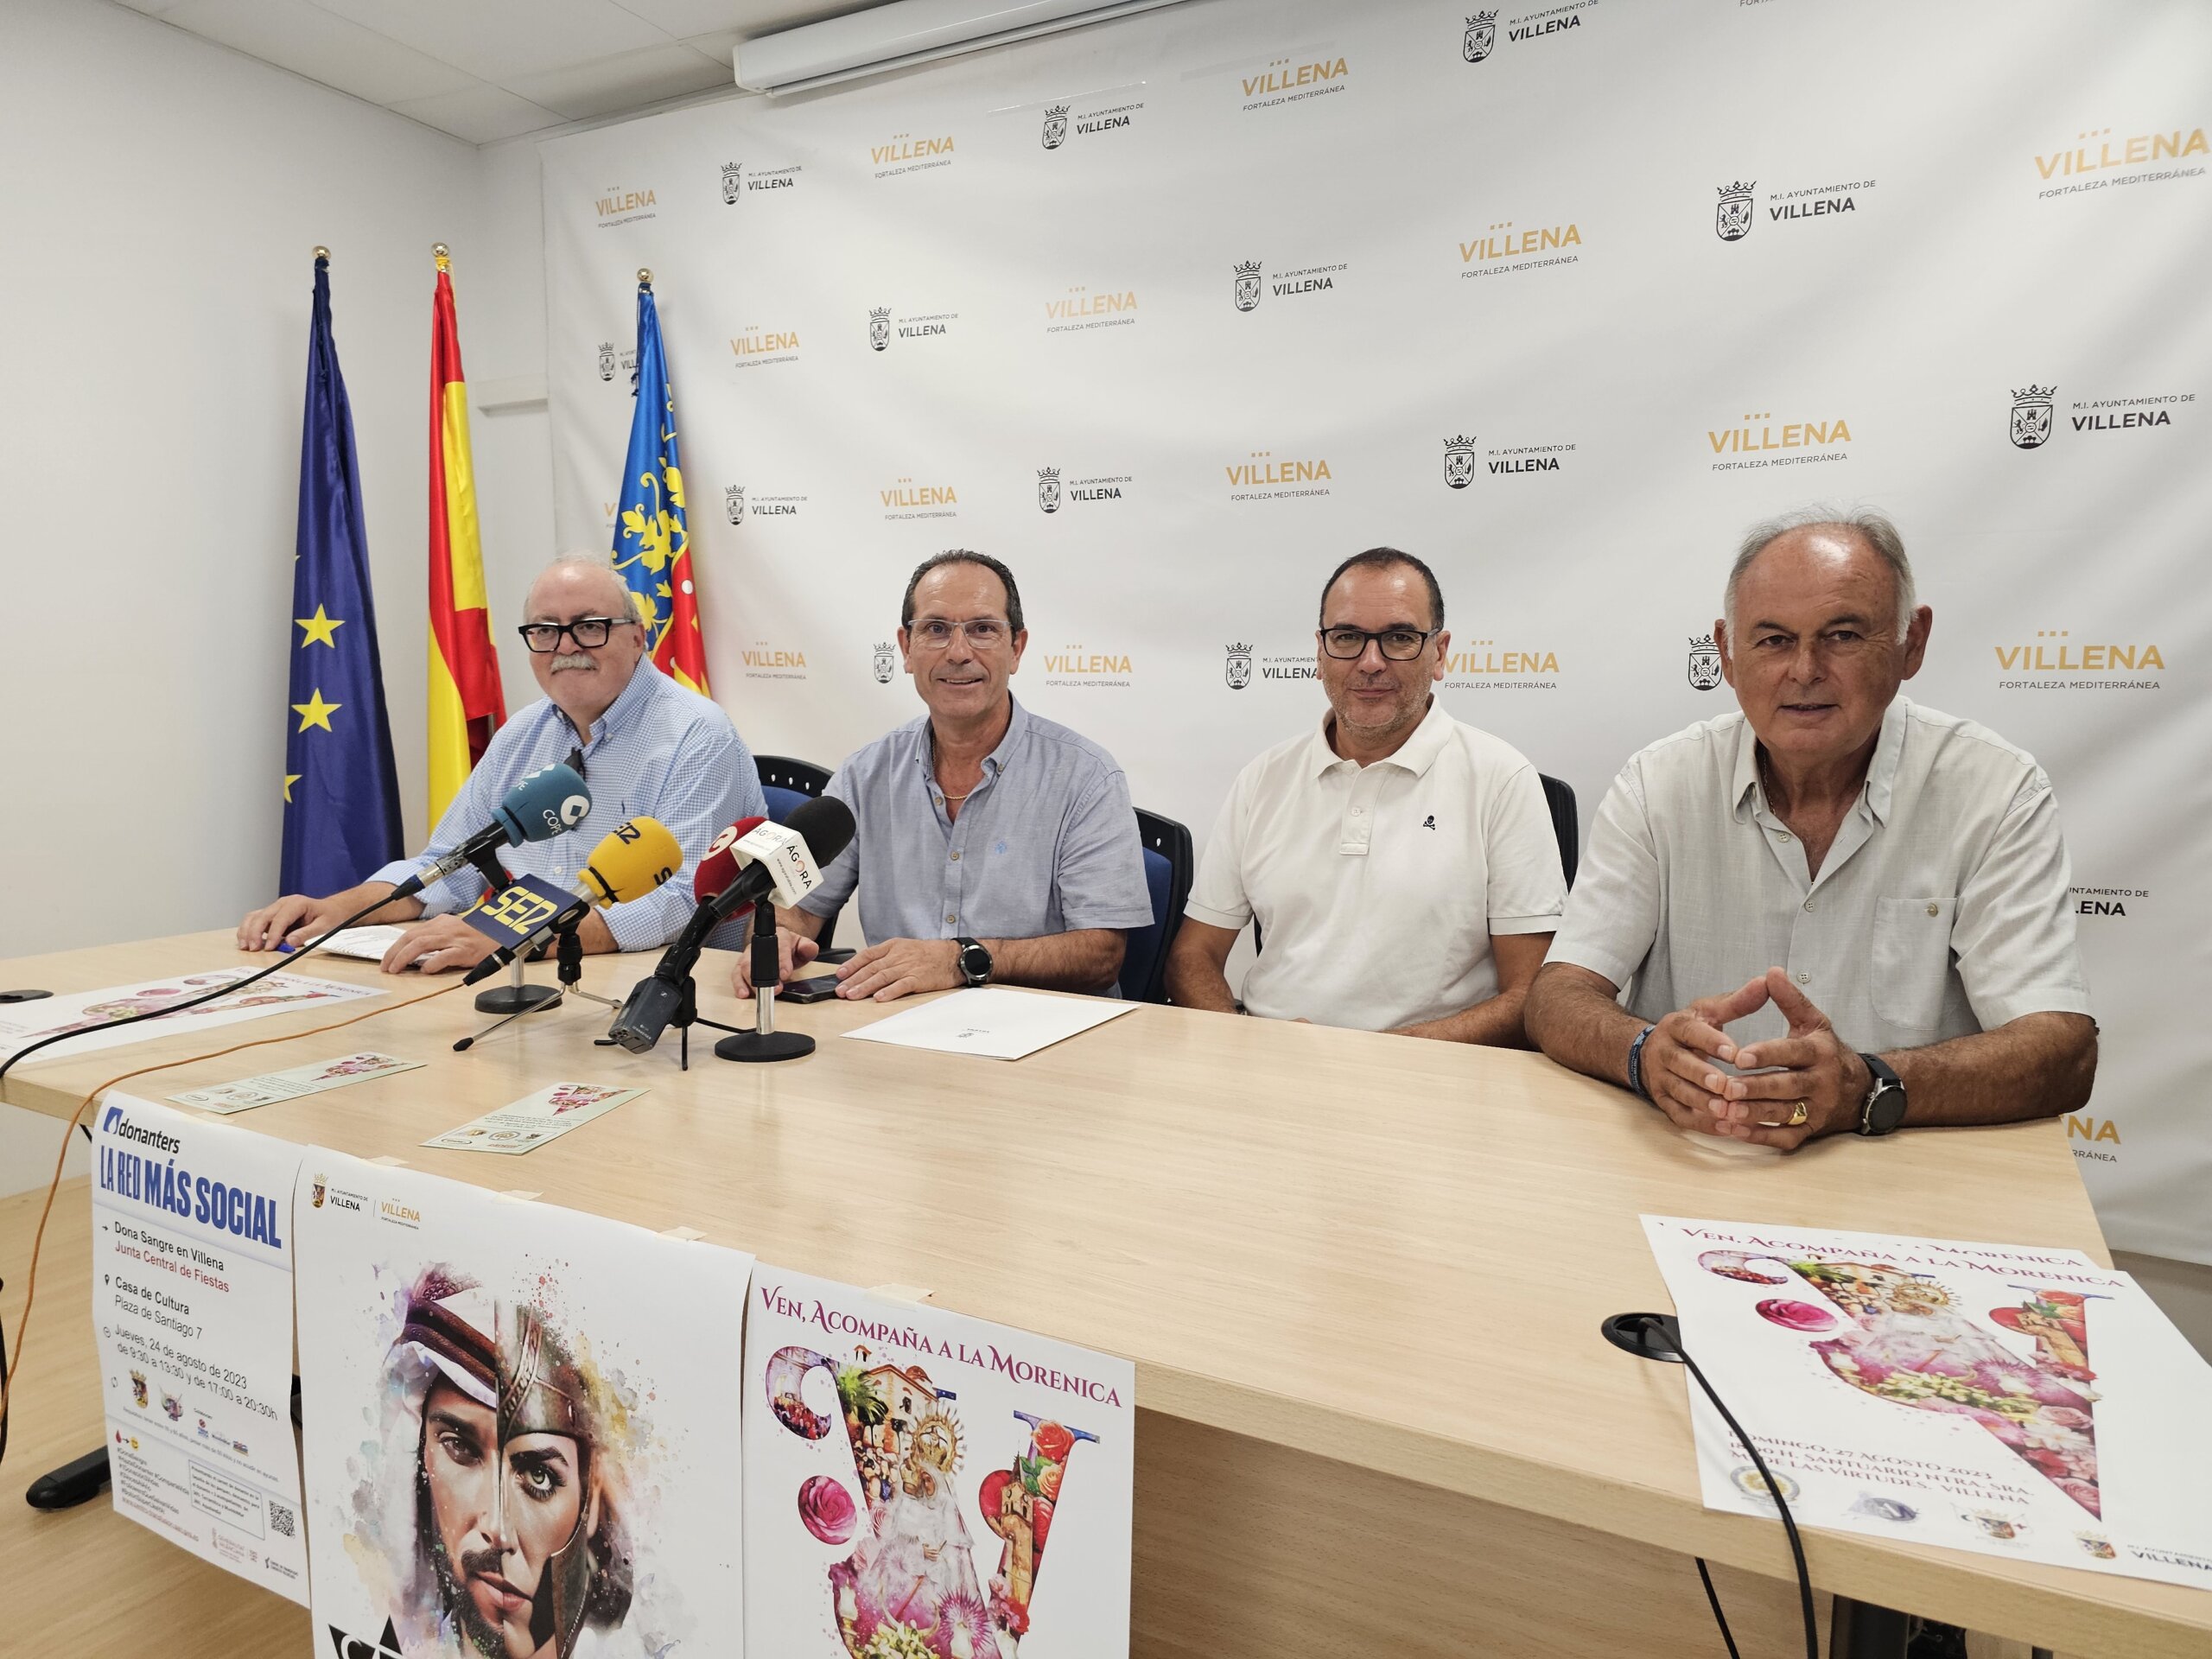 El pasodoble “Centenario” de la comparsa de Andaluces se interpretará en el concierto de los pasodobles por primera vez